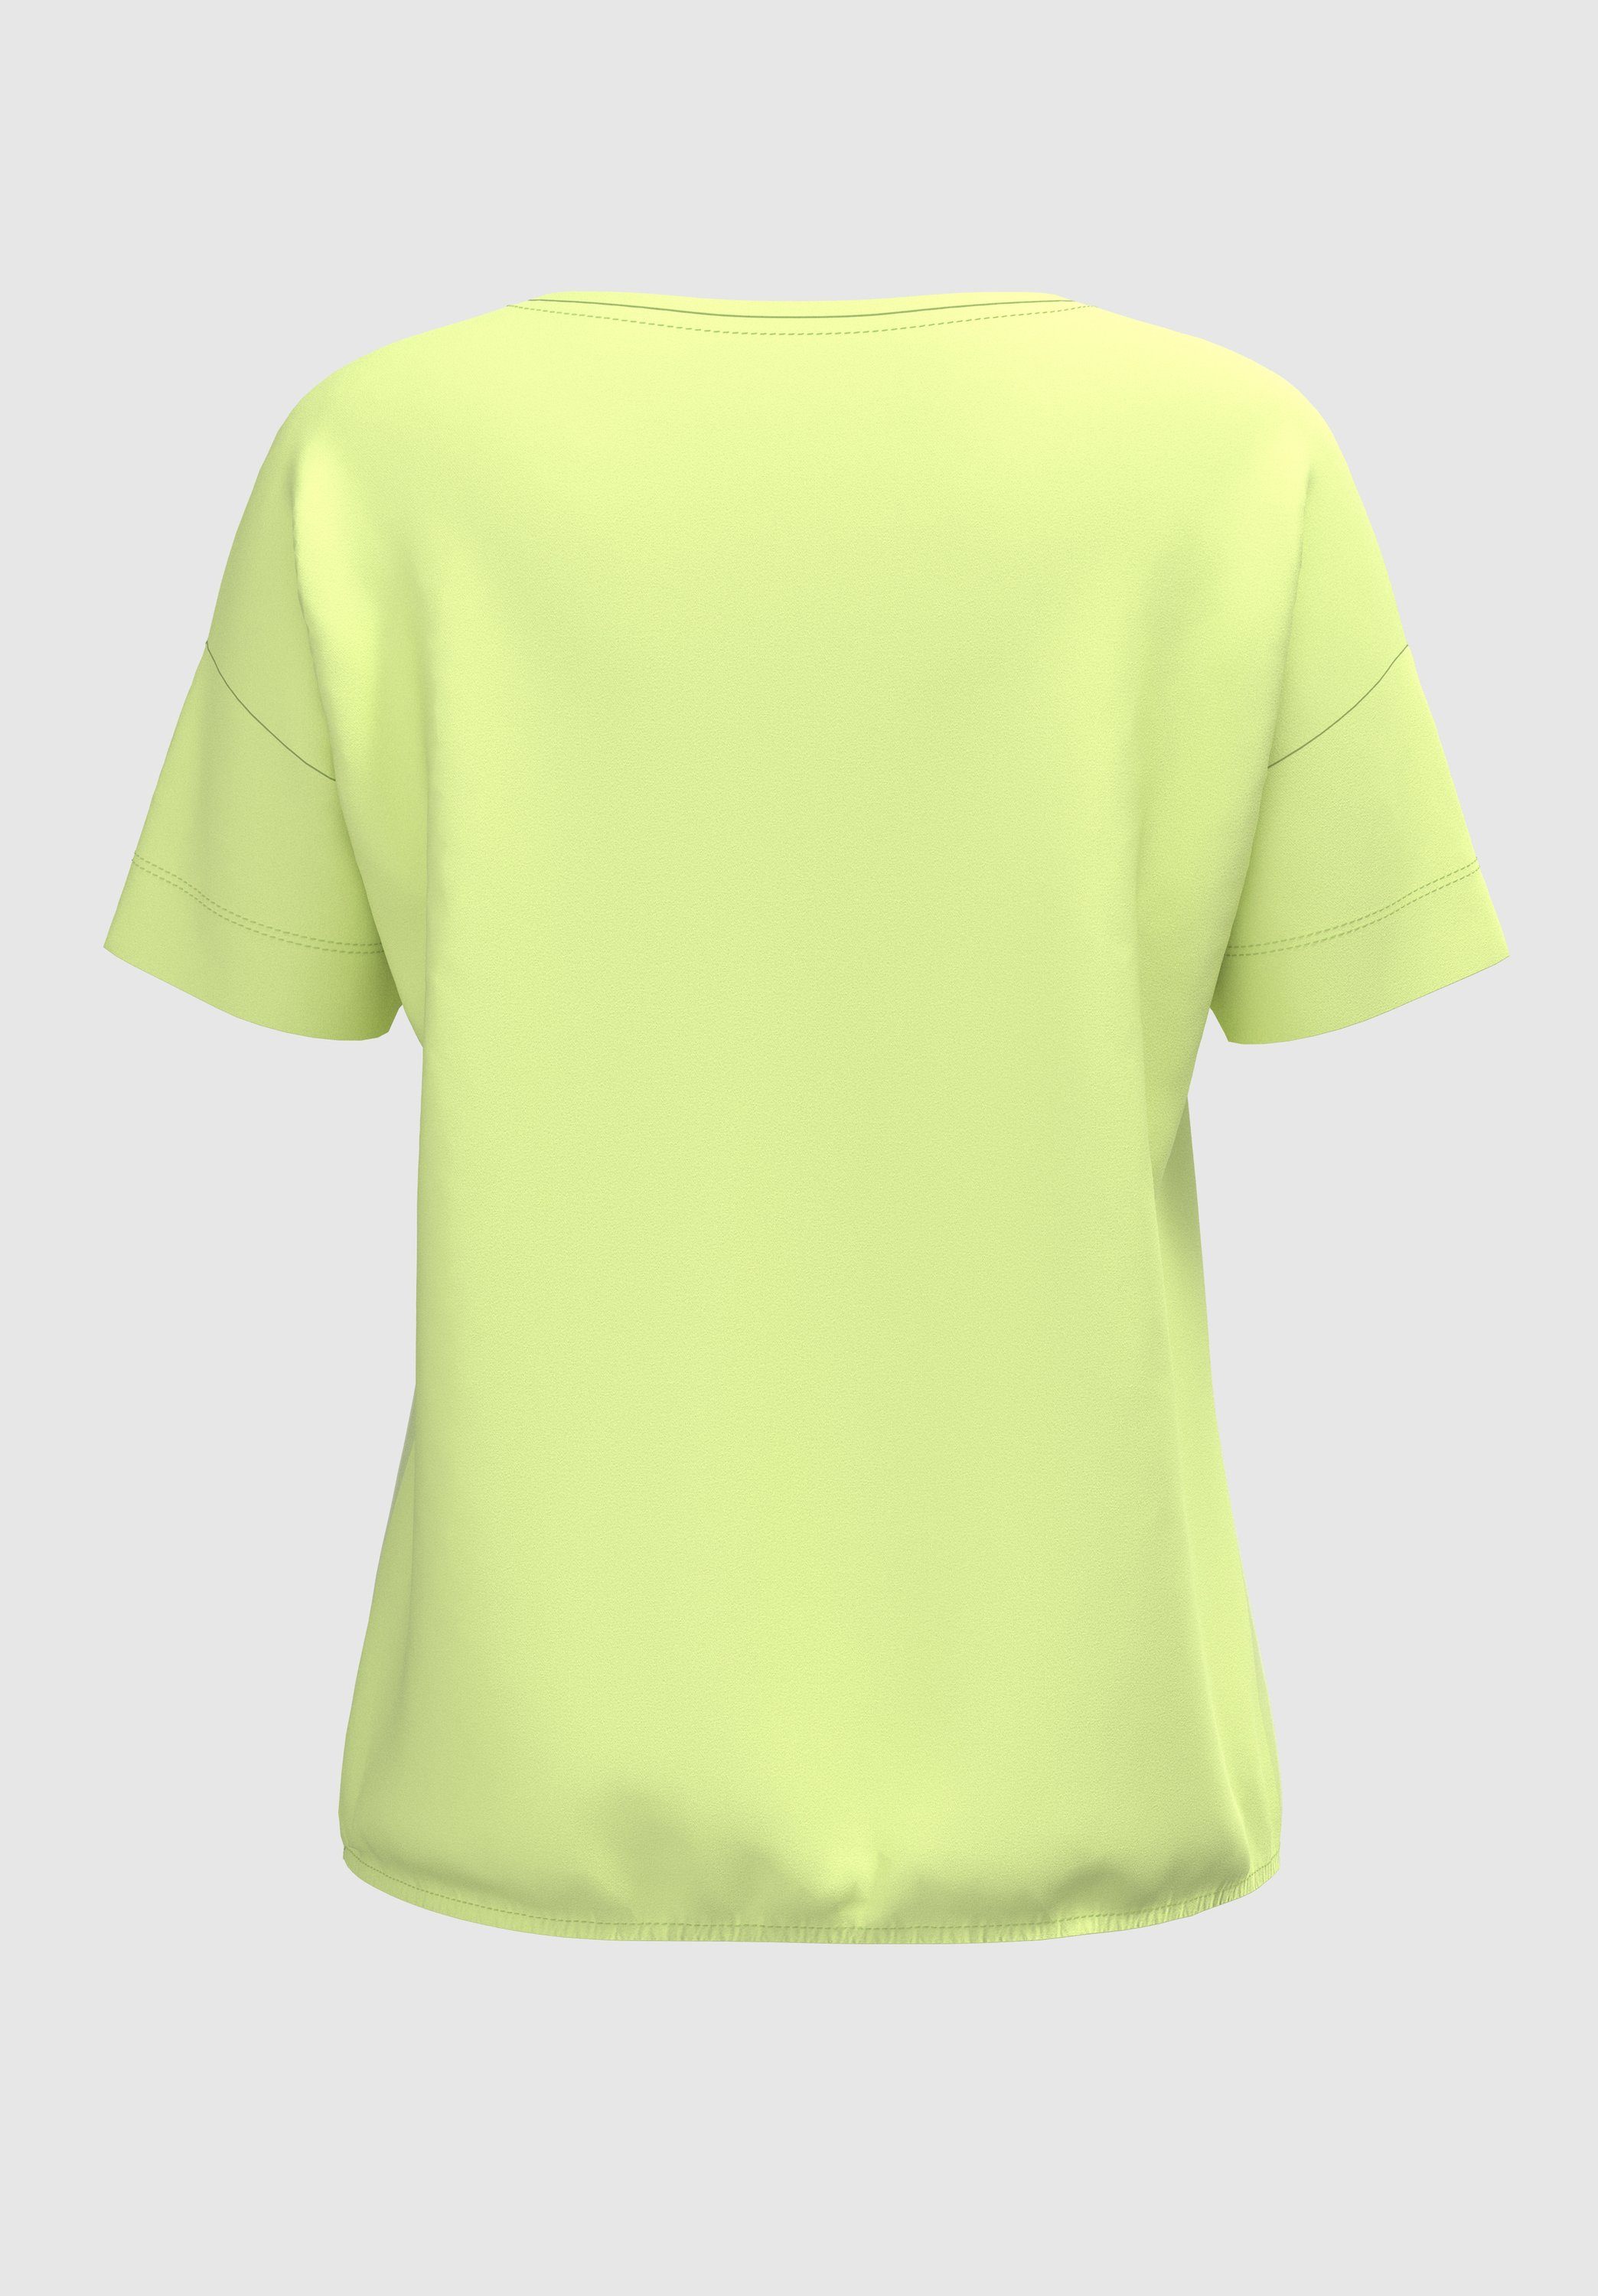 bianca Print-Shirt mit besonderen citron Frontmotiv und Details coolem JULIE